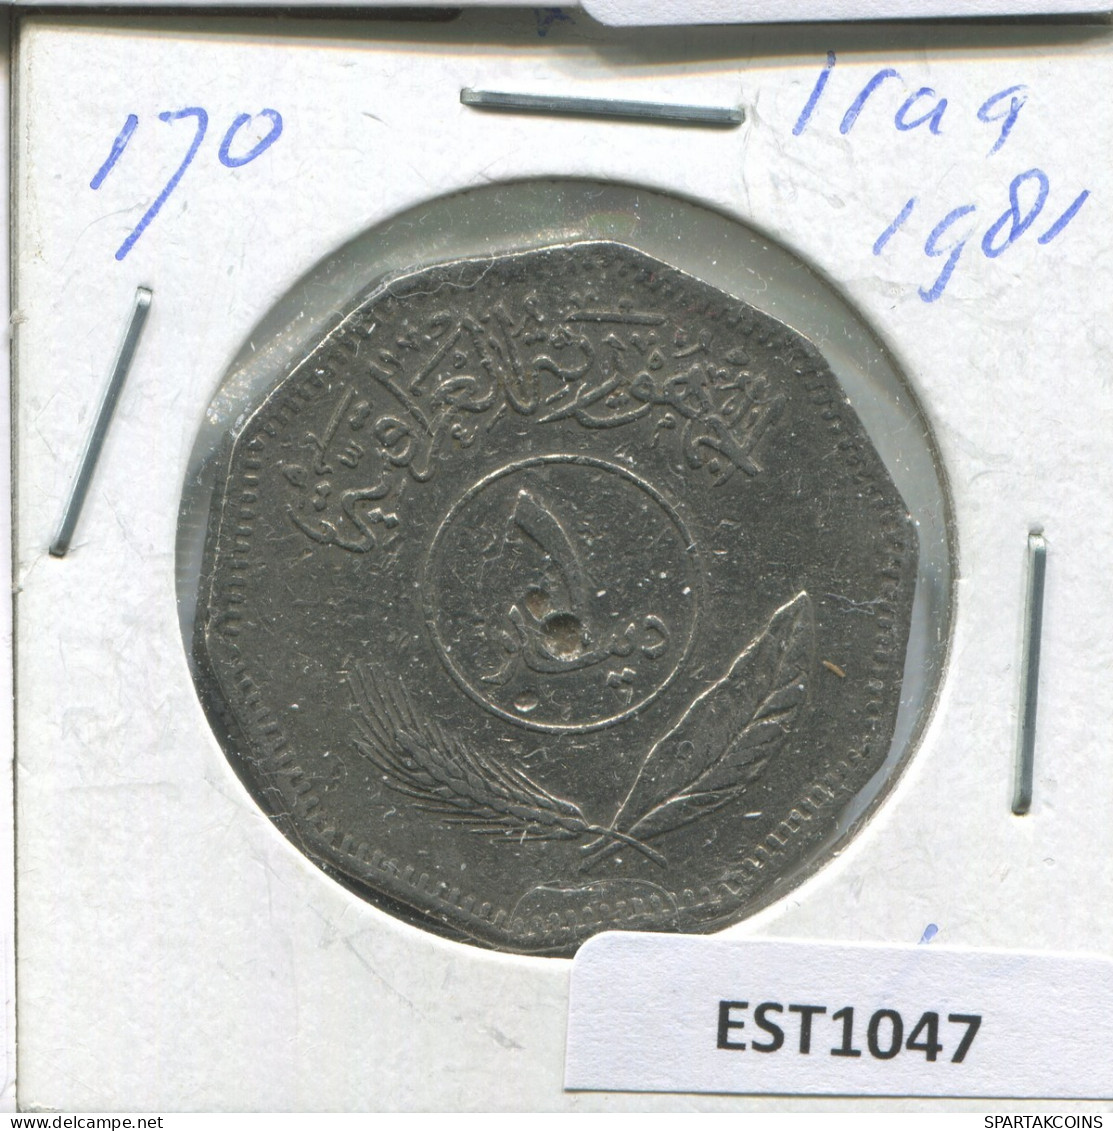 10 FILS 1981 IRAQ Islámico Moneda #EST1047.2.E.A - Irak